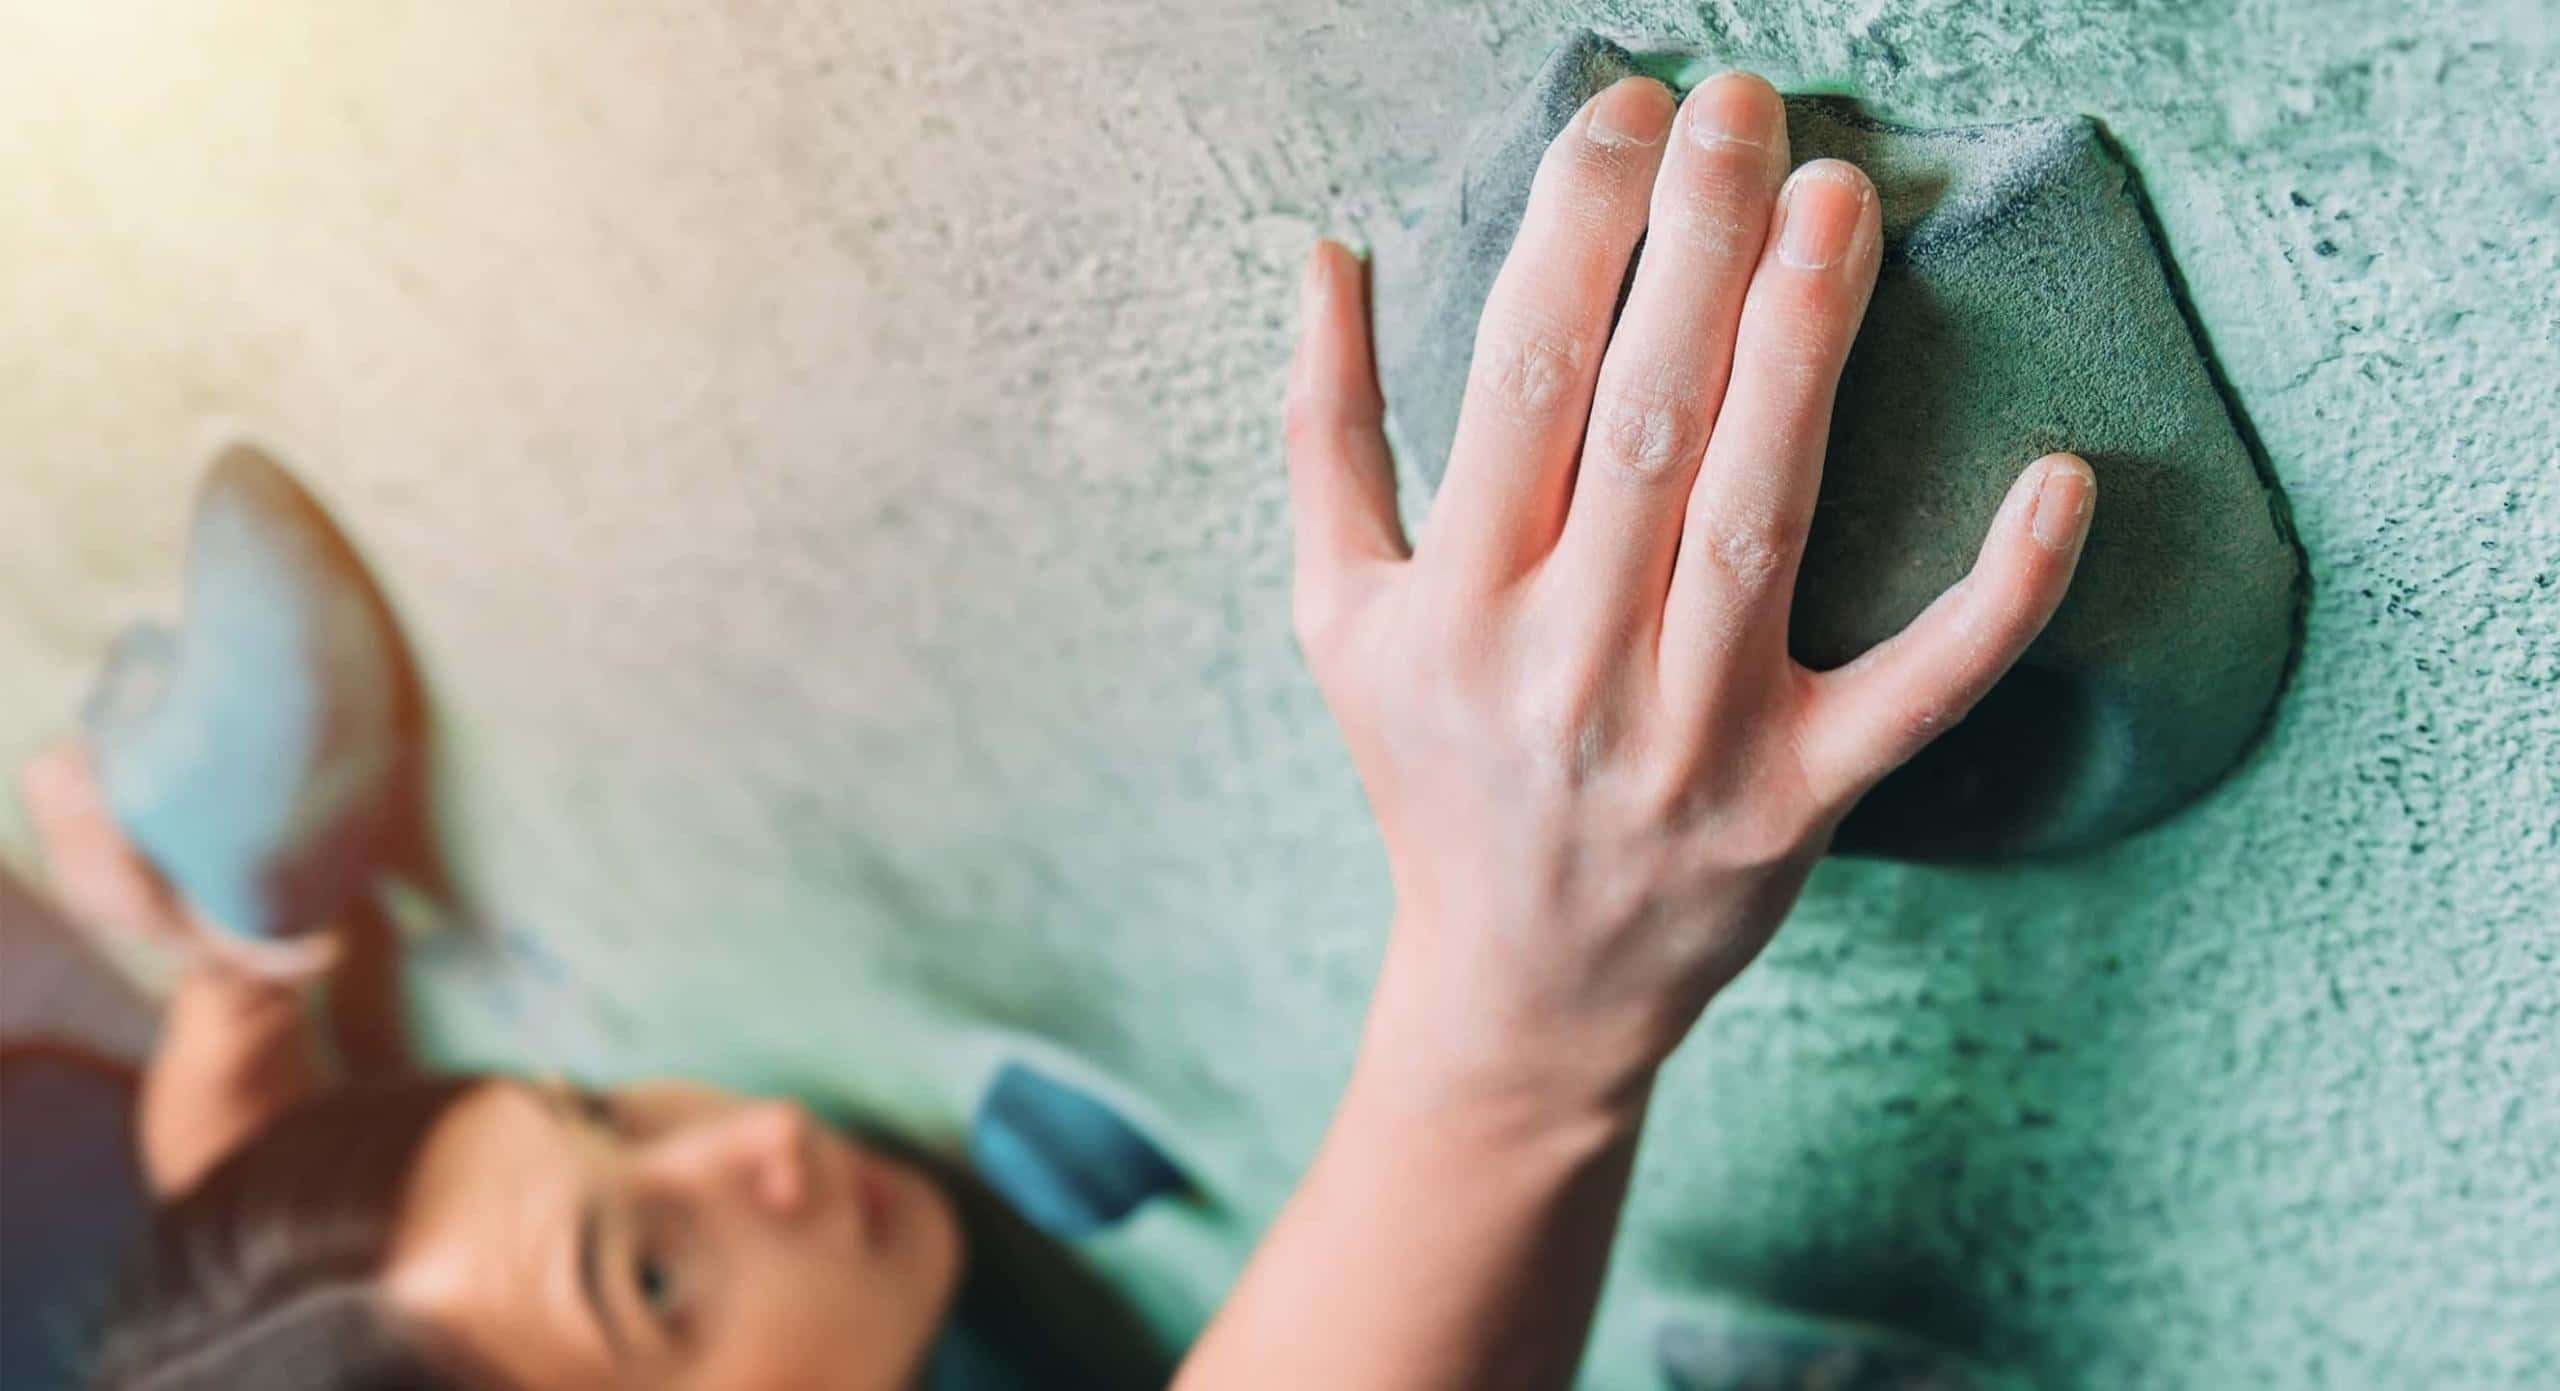 Detailaufnahme einer Frauen Hand beim Bouldern.